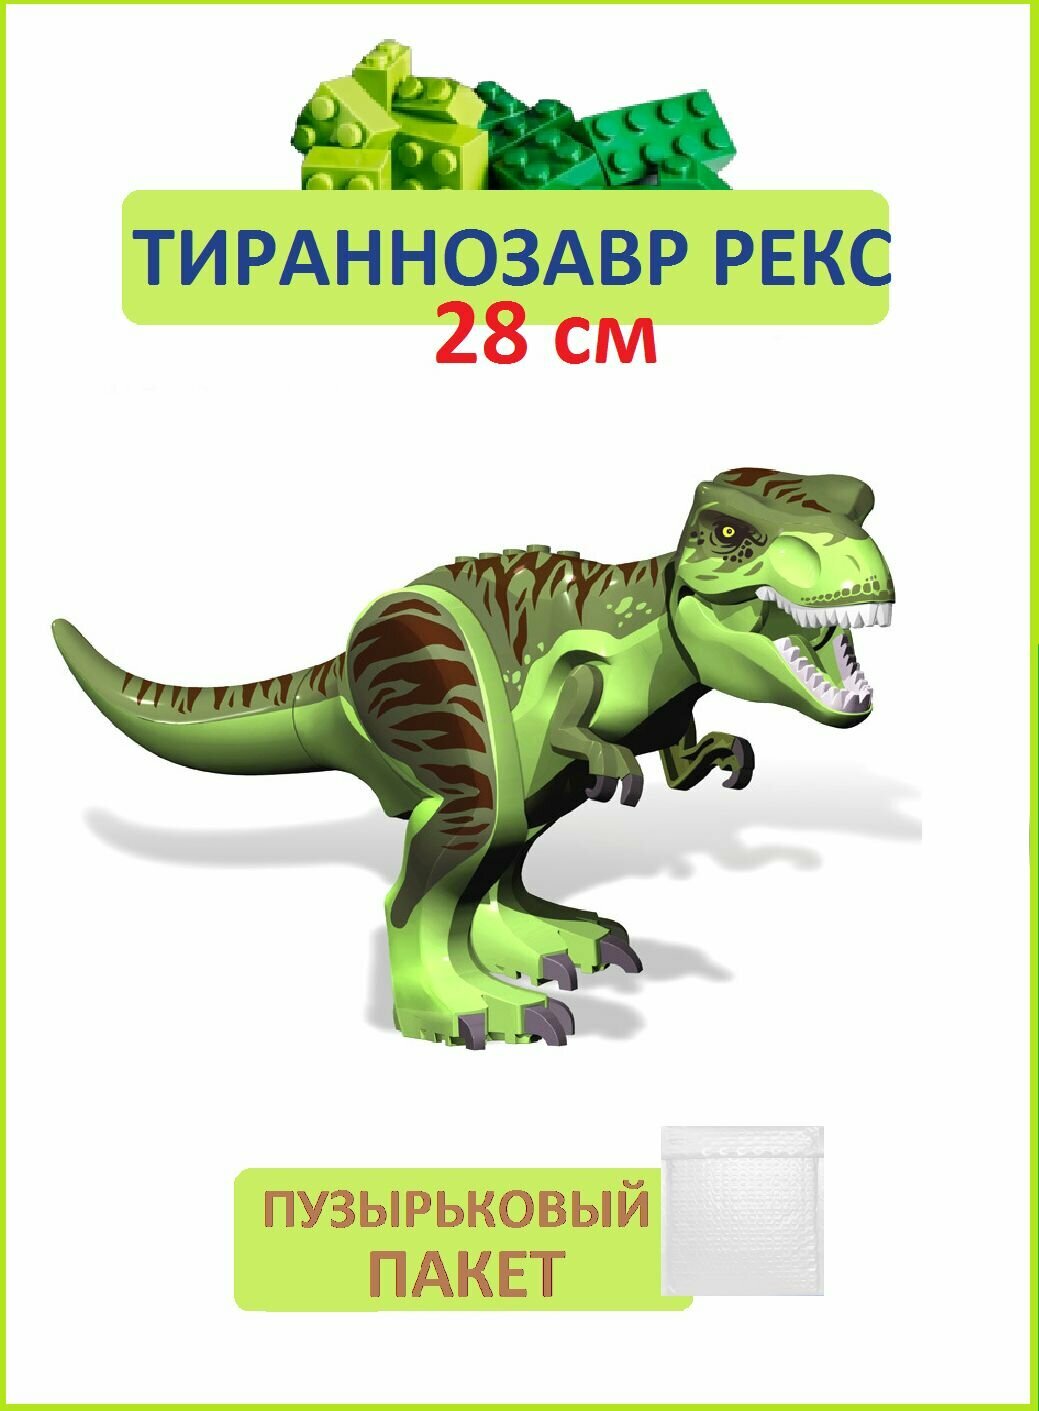 Тираннозавр рекс светло-зеленый, Динозавр фигурка конструктор, большой, Парк Юрского периода